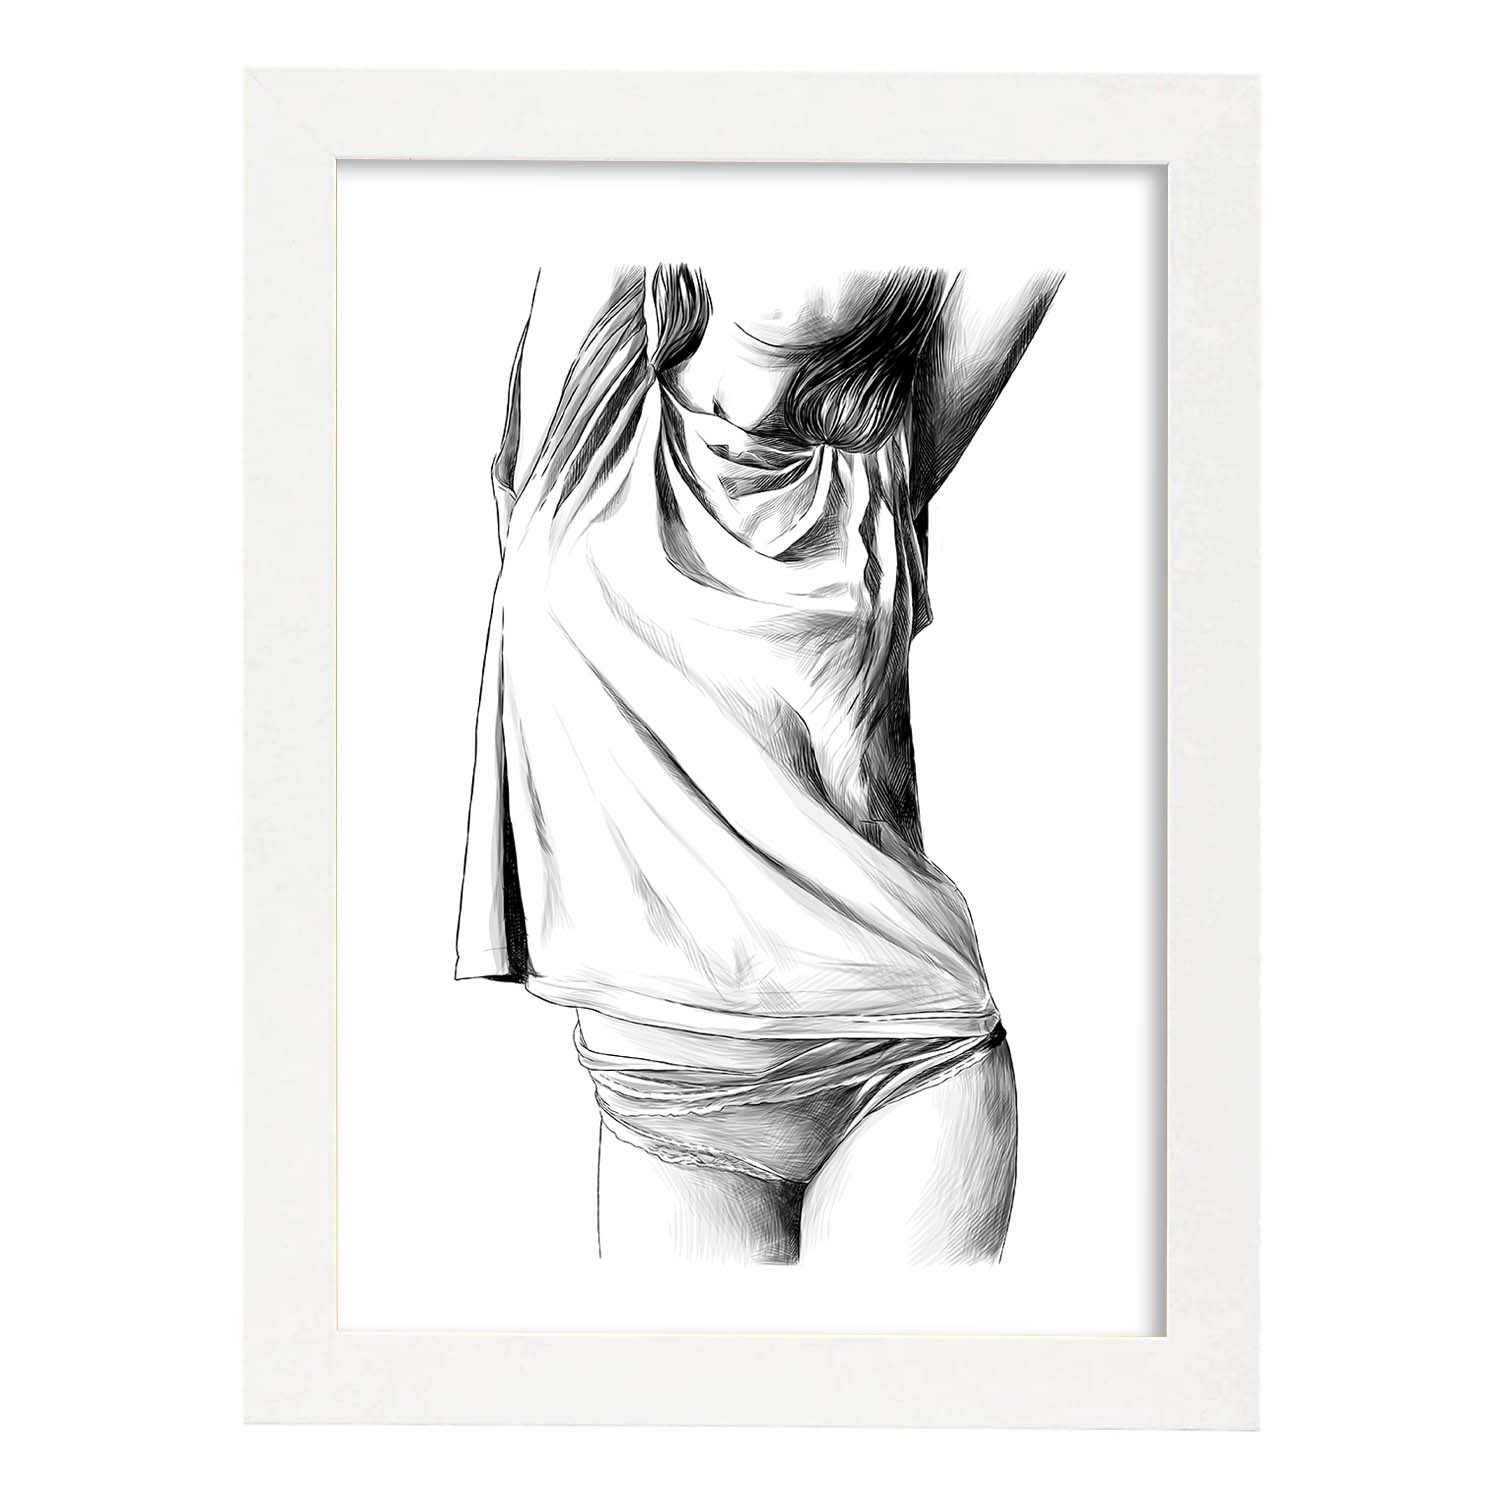 Posters eróticos. Lámina Frontal 1 dibujada con imágenes sensuales del cuerpo femenino.-Artwork-Nacnic-A4-Marco Blanco-Nacnic Estudio SL